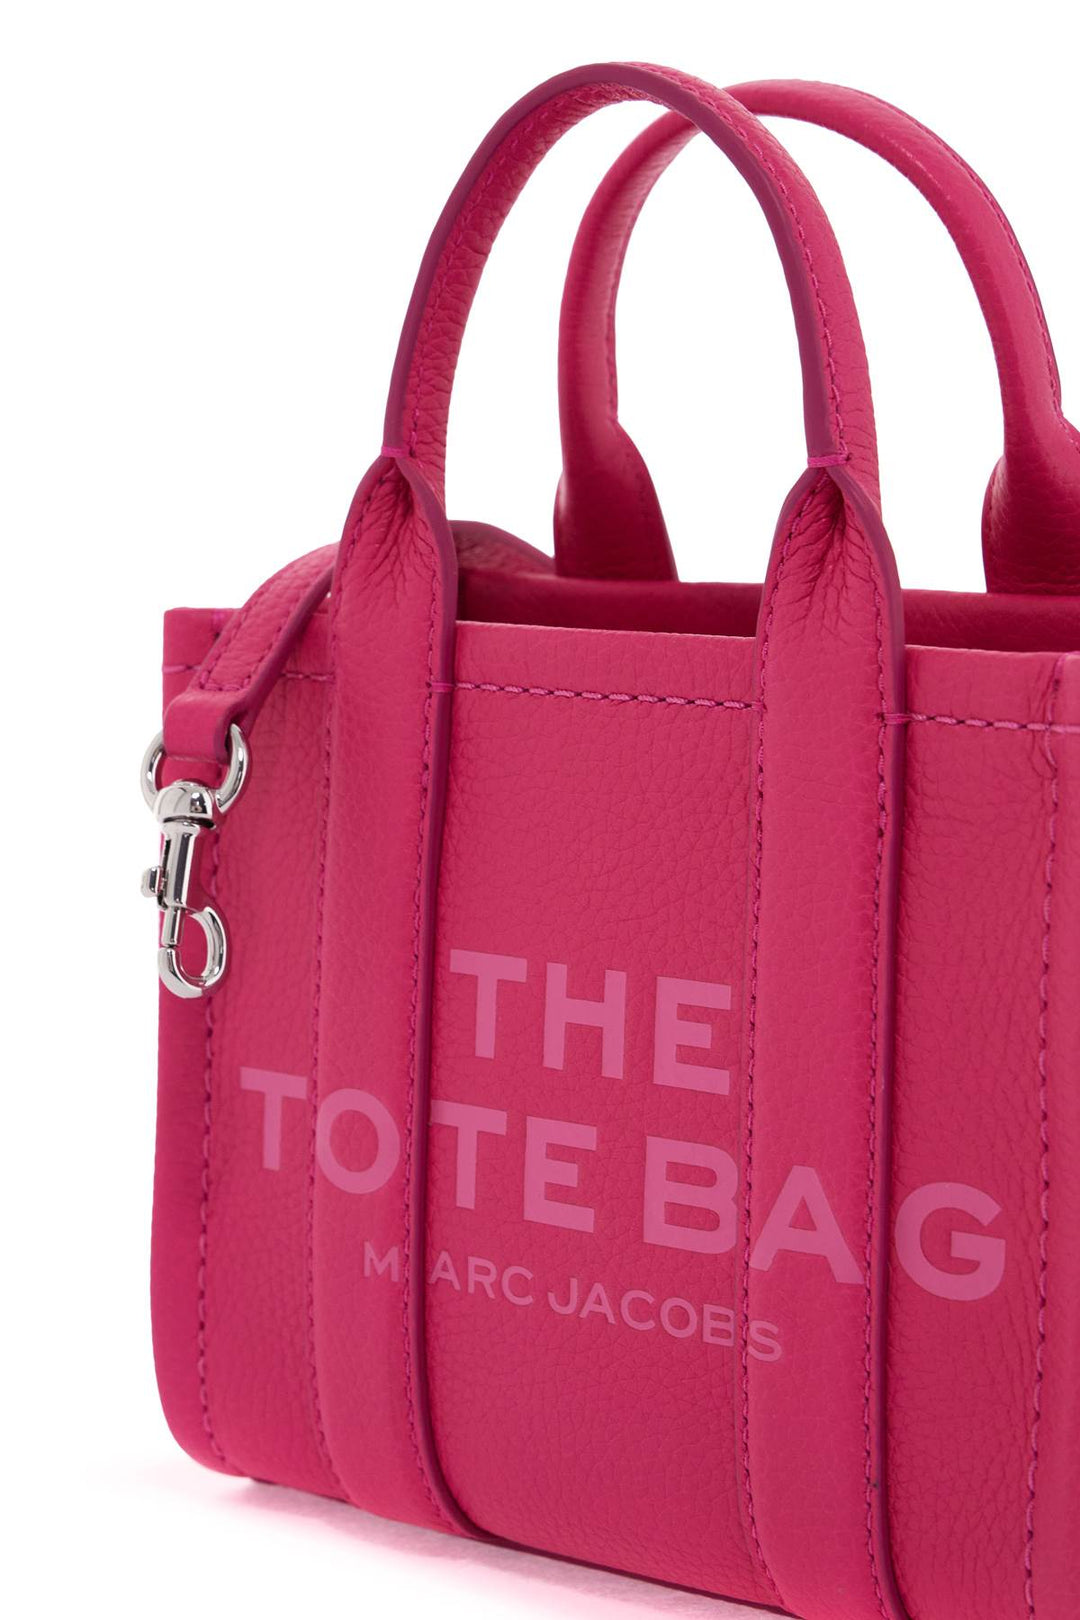 Marc Jacobs The Leather Mini Tote Bag   Fuchsia